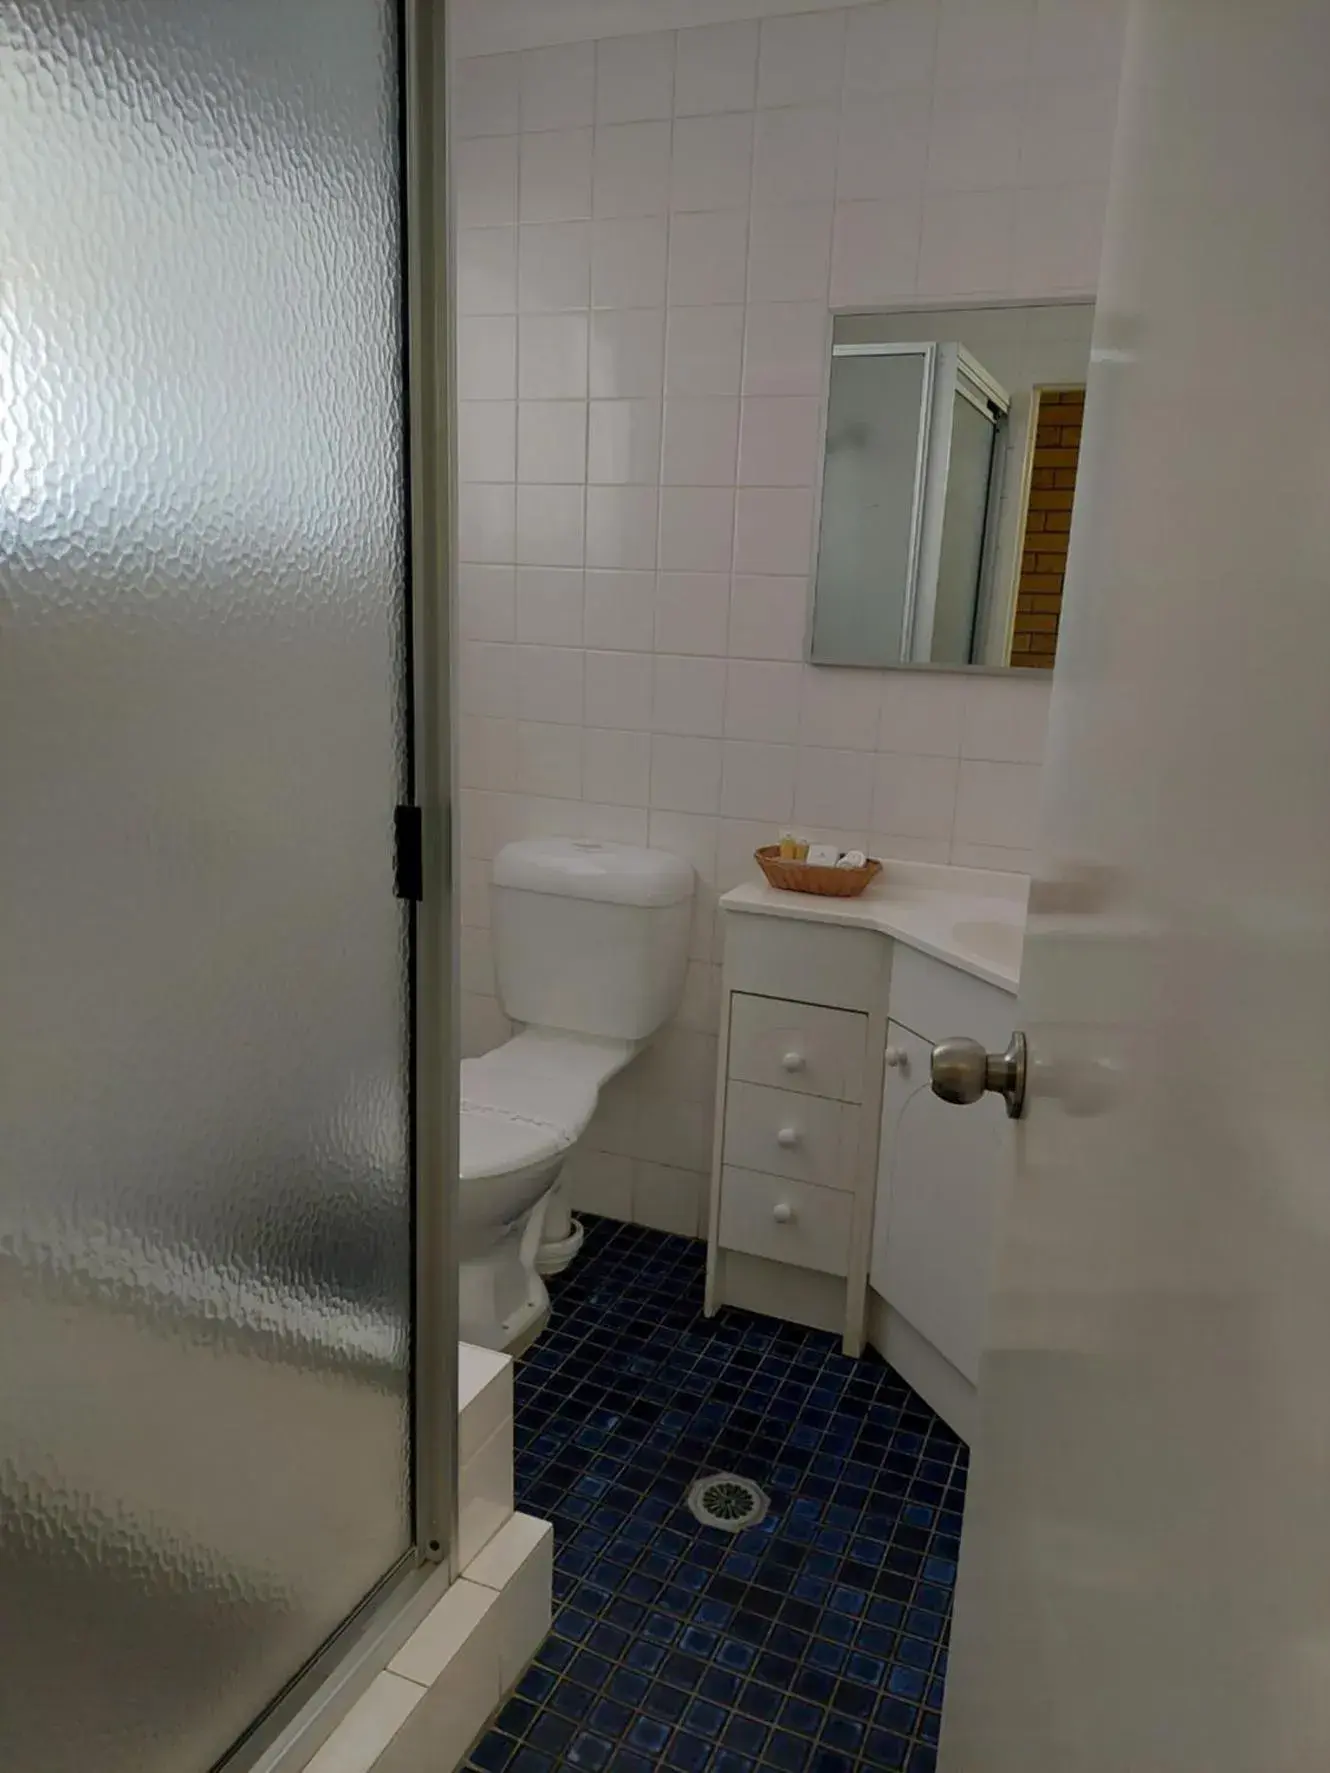 Bathroom in Settlers Motor Inn